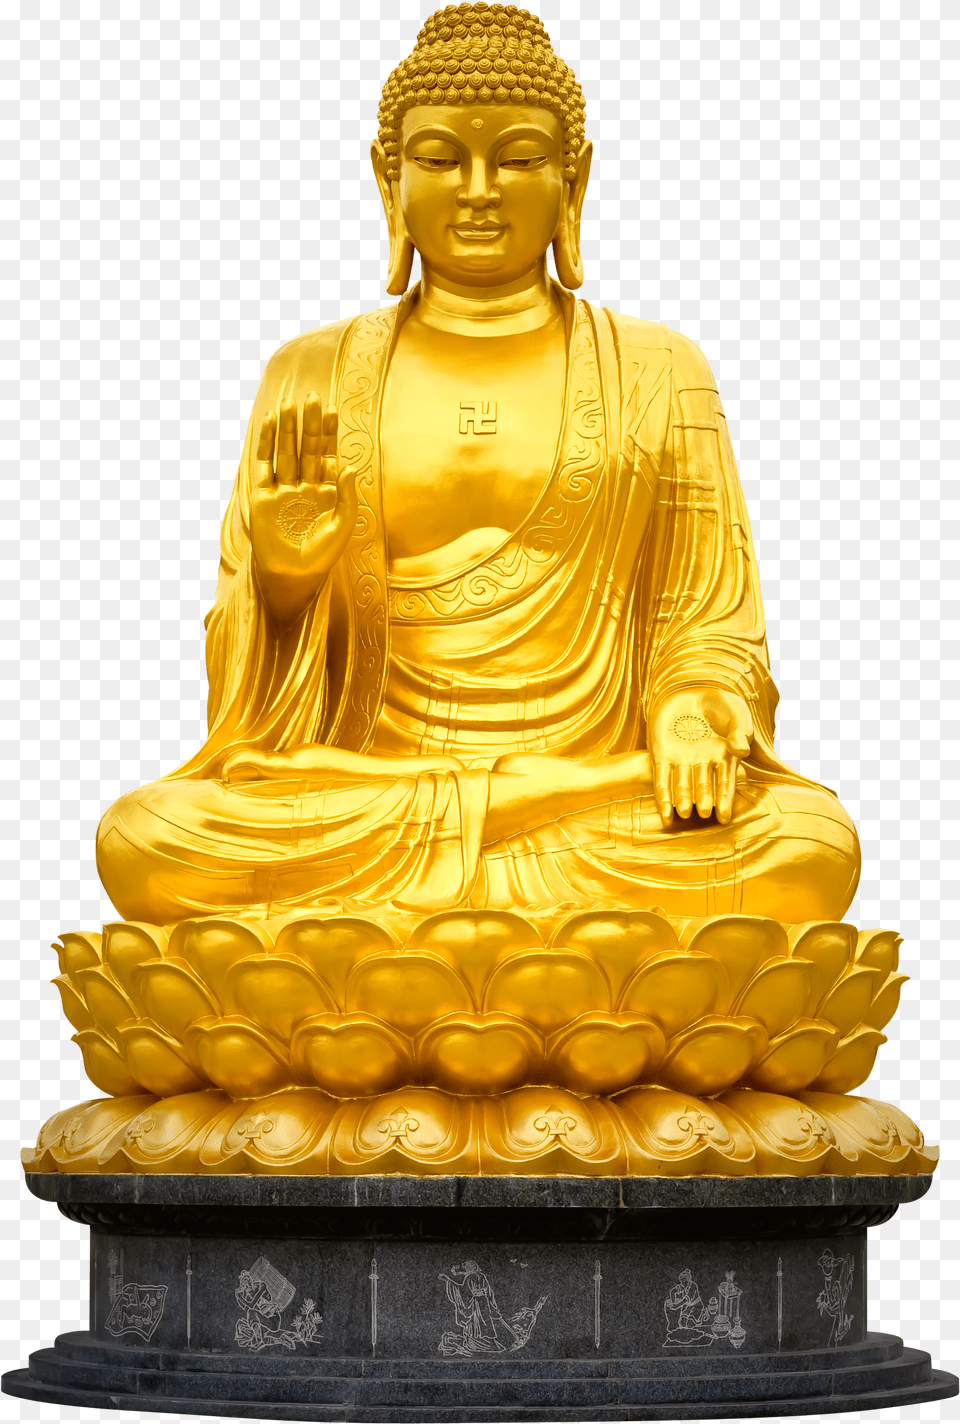 Bronze Sculpture Gautam Buddha Golden Statue Png Image